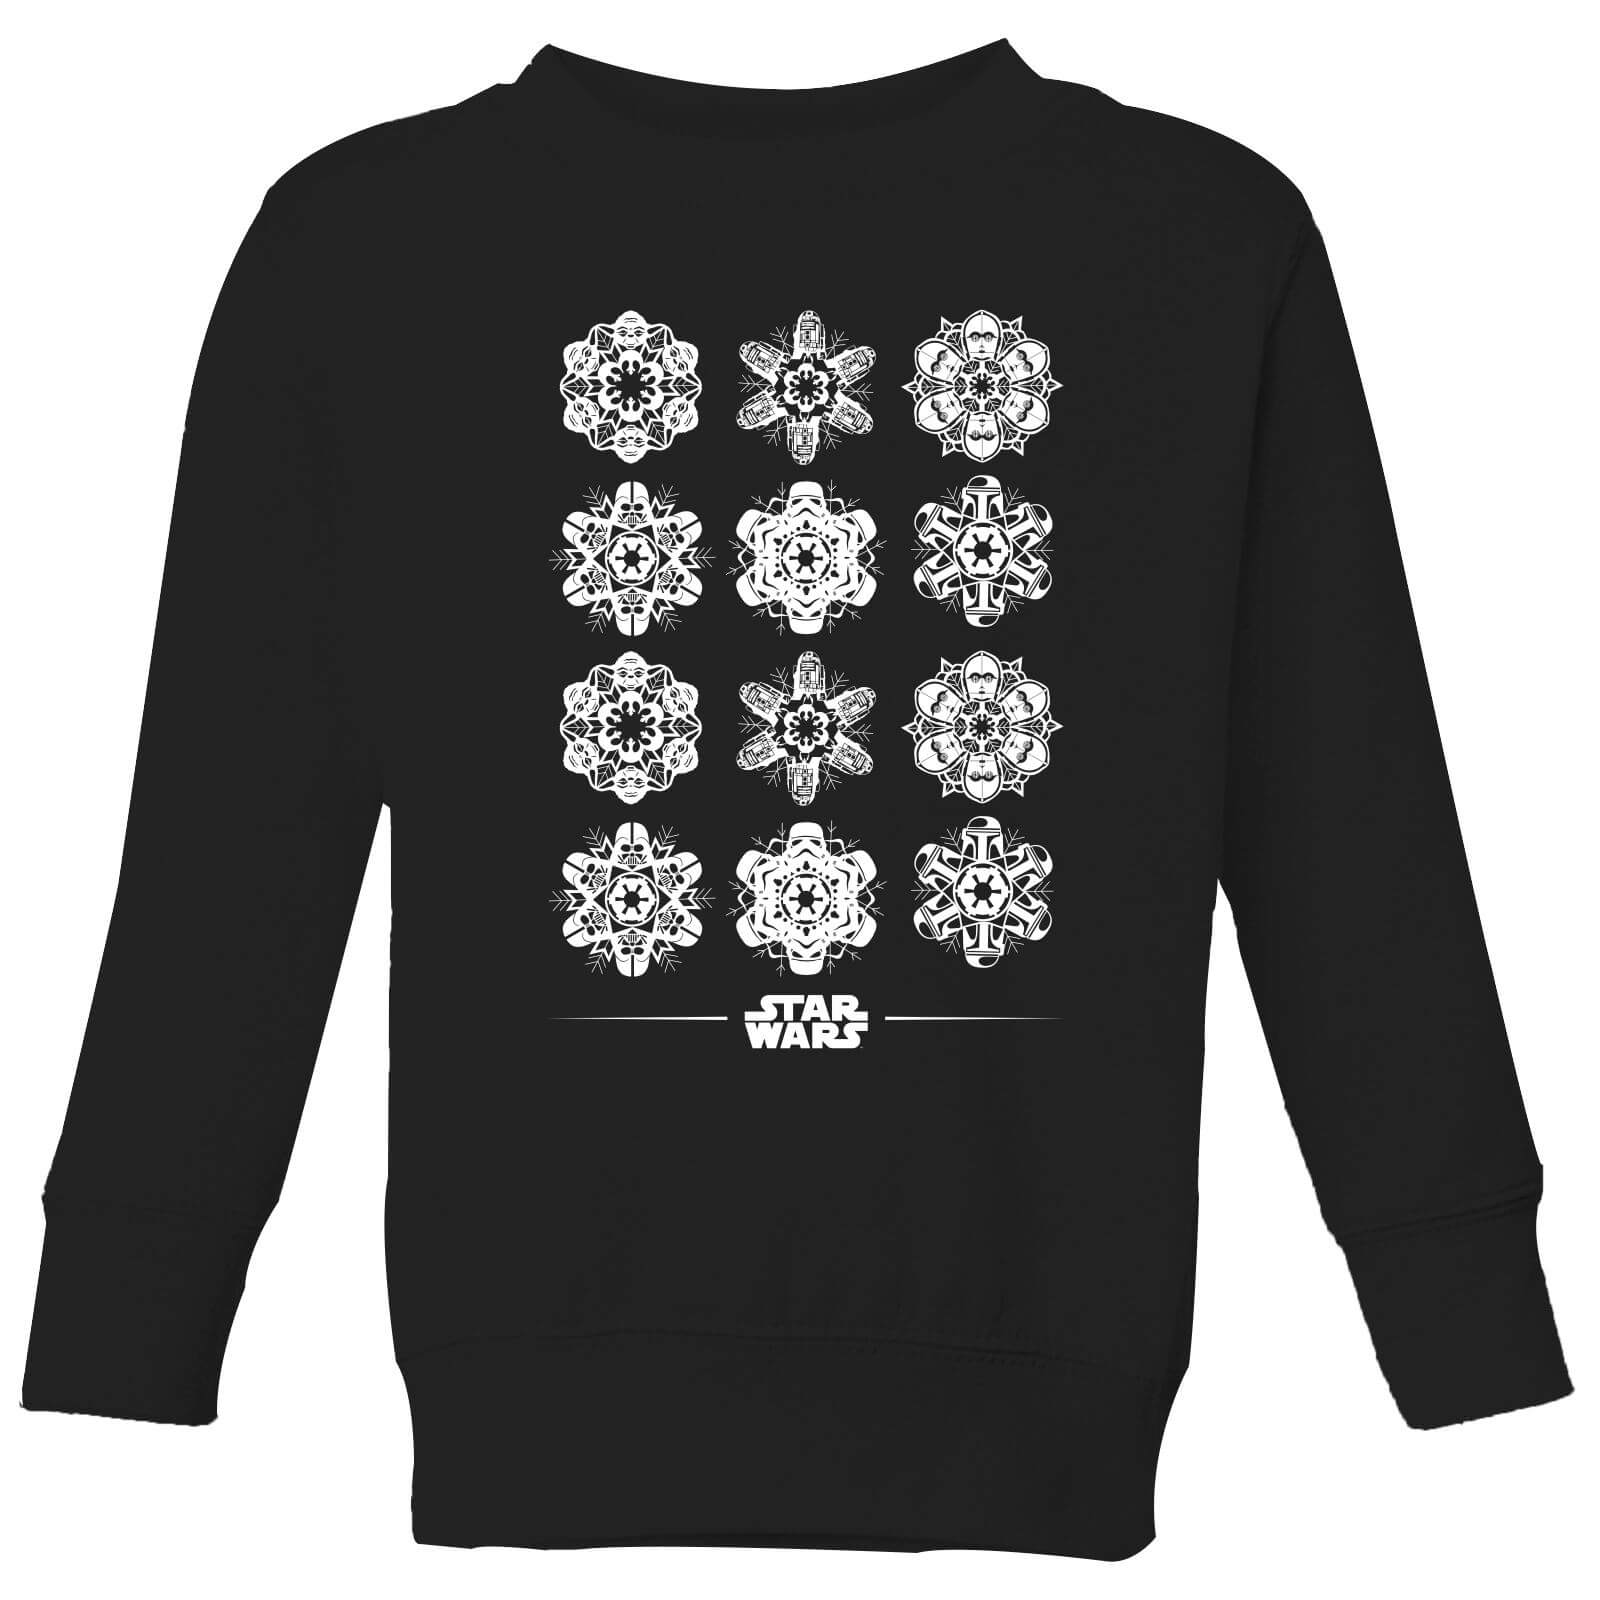 Star Wars Snowflake Kids Christmas Sweatshirt - Black - 11-12 Years